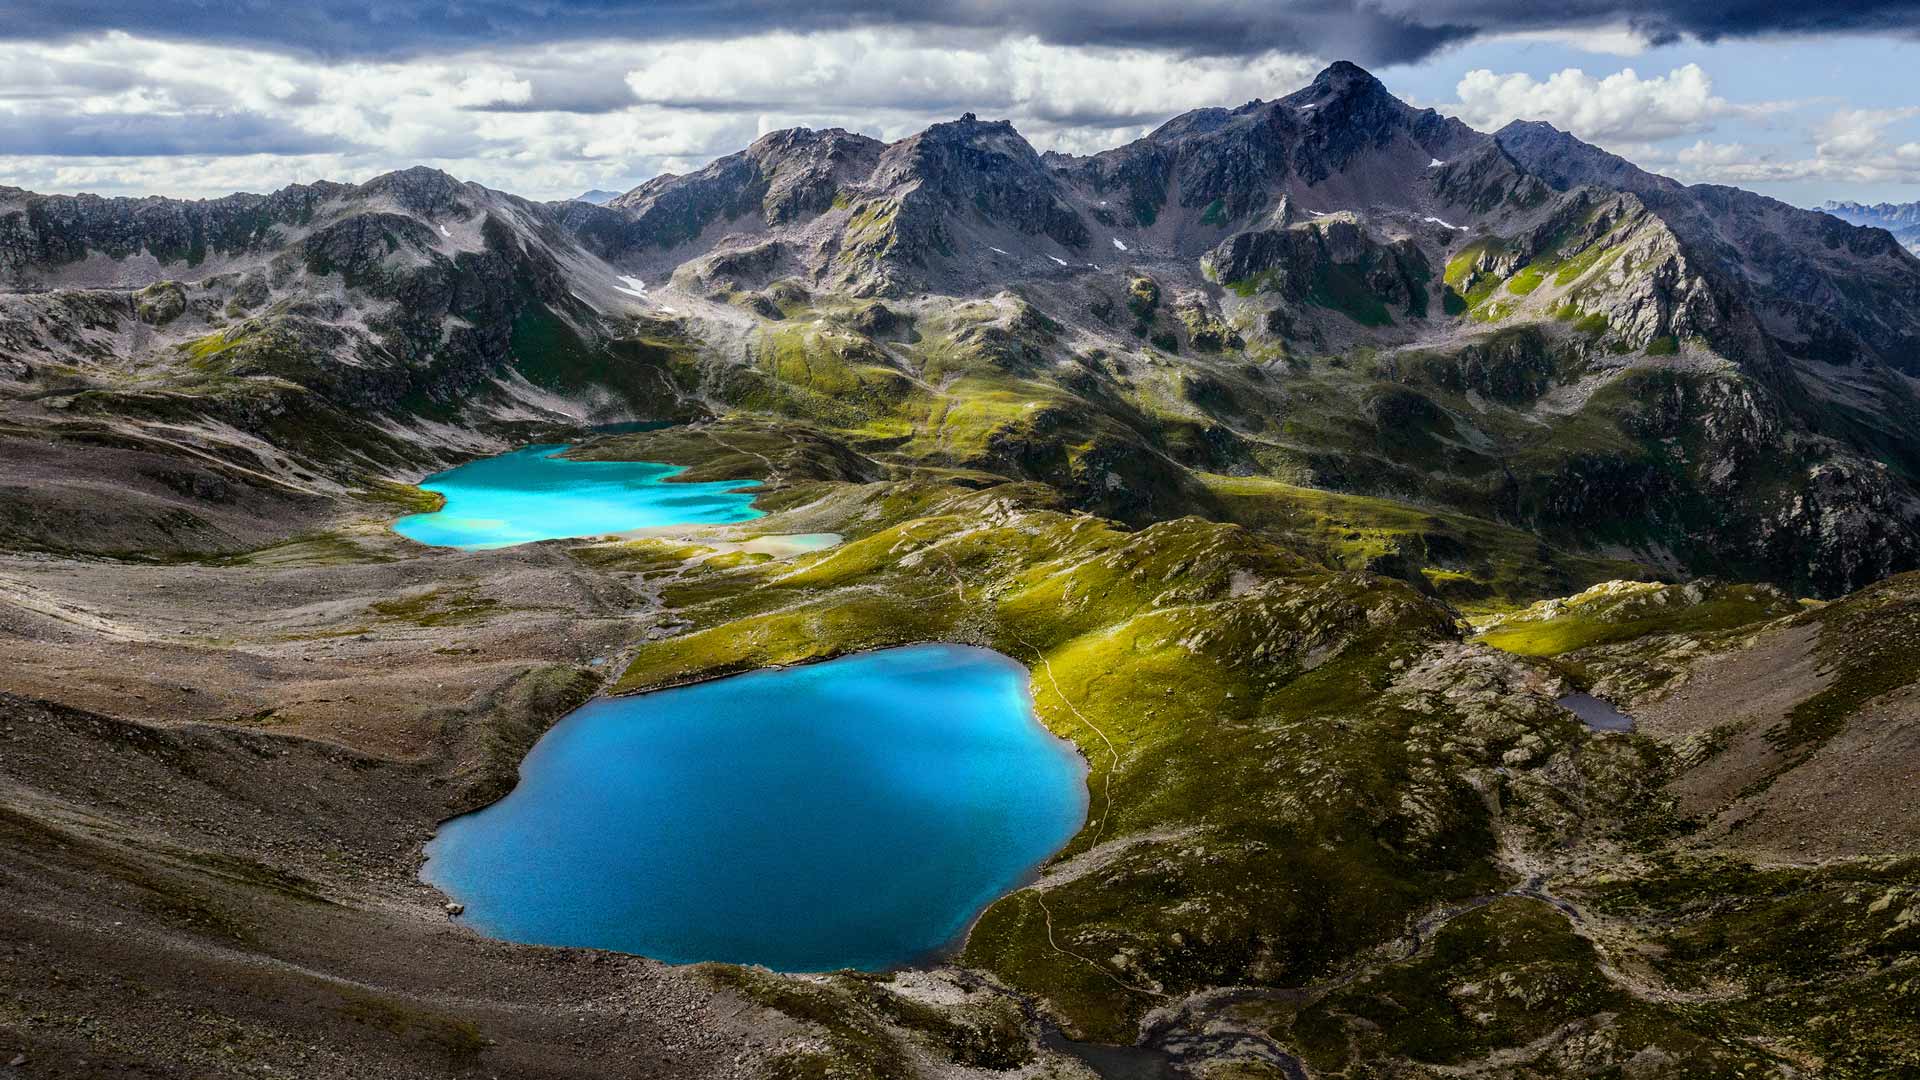 Jöriseen lakes in the Silvretta Alps